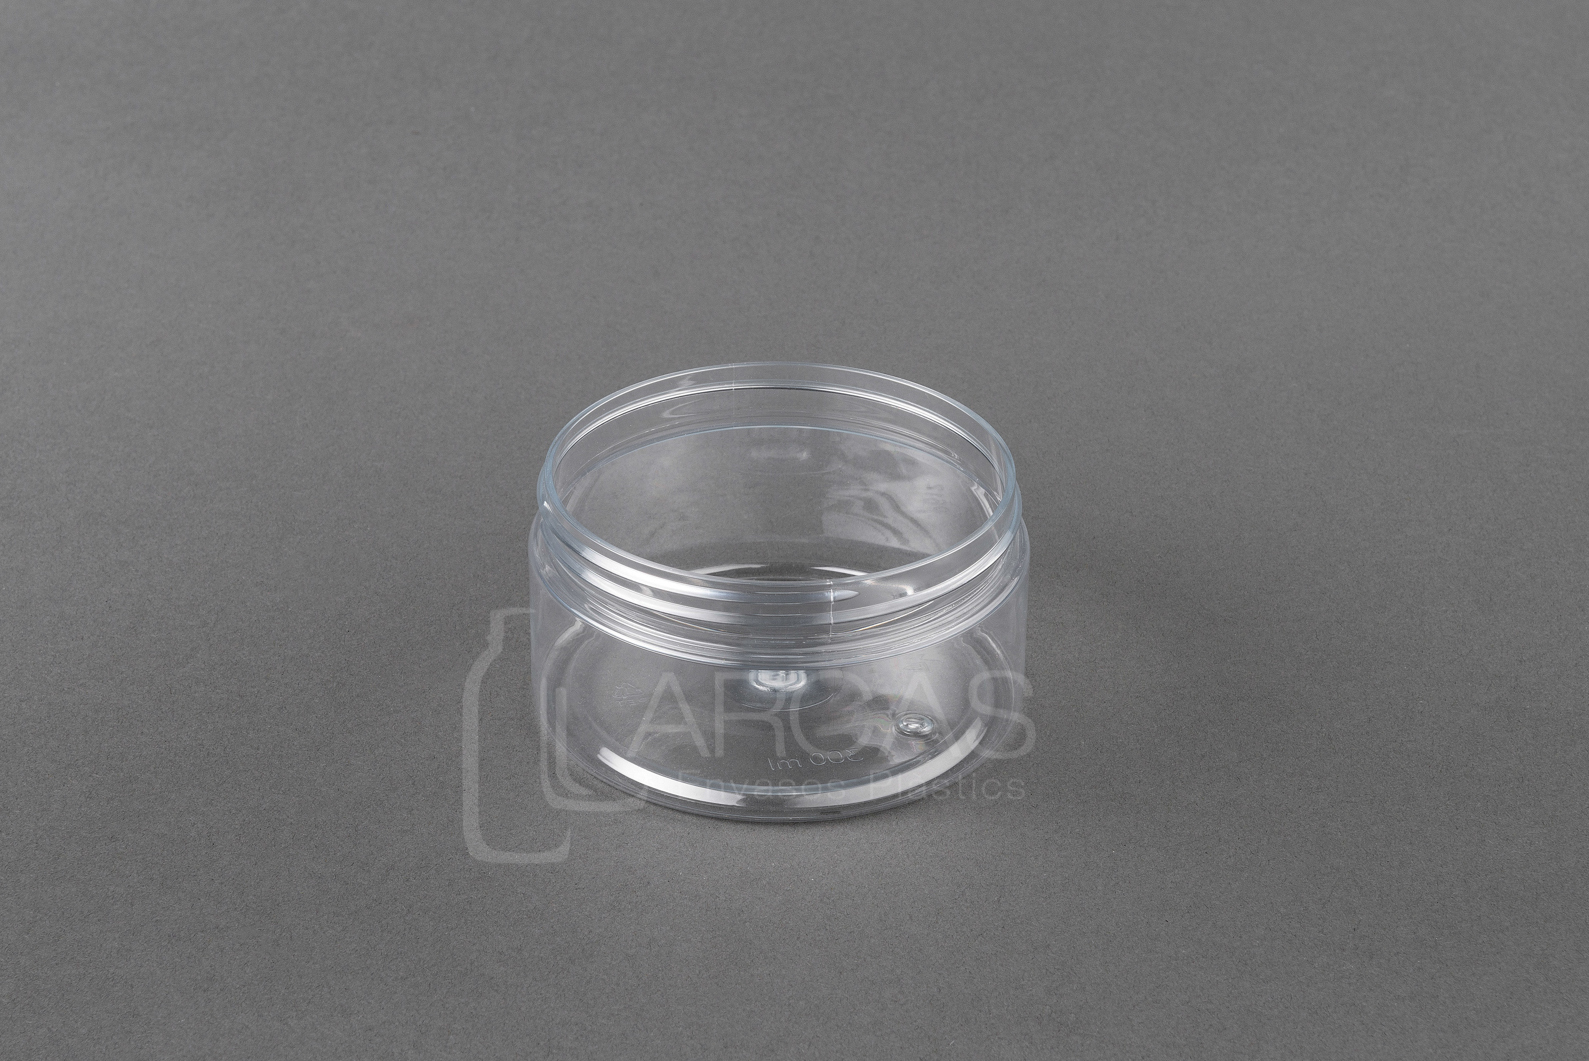 Fabricación de Tarro rosca PET 300ml D100 transparente